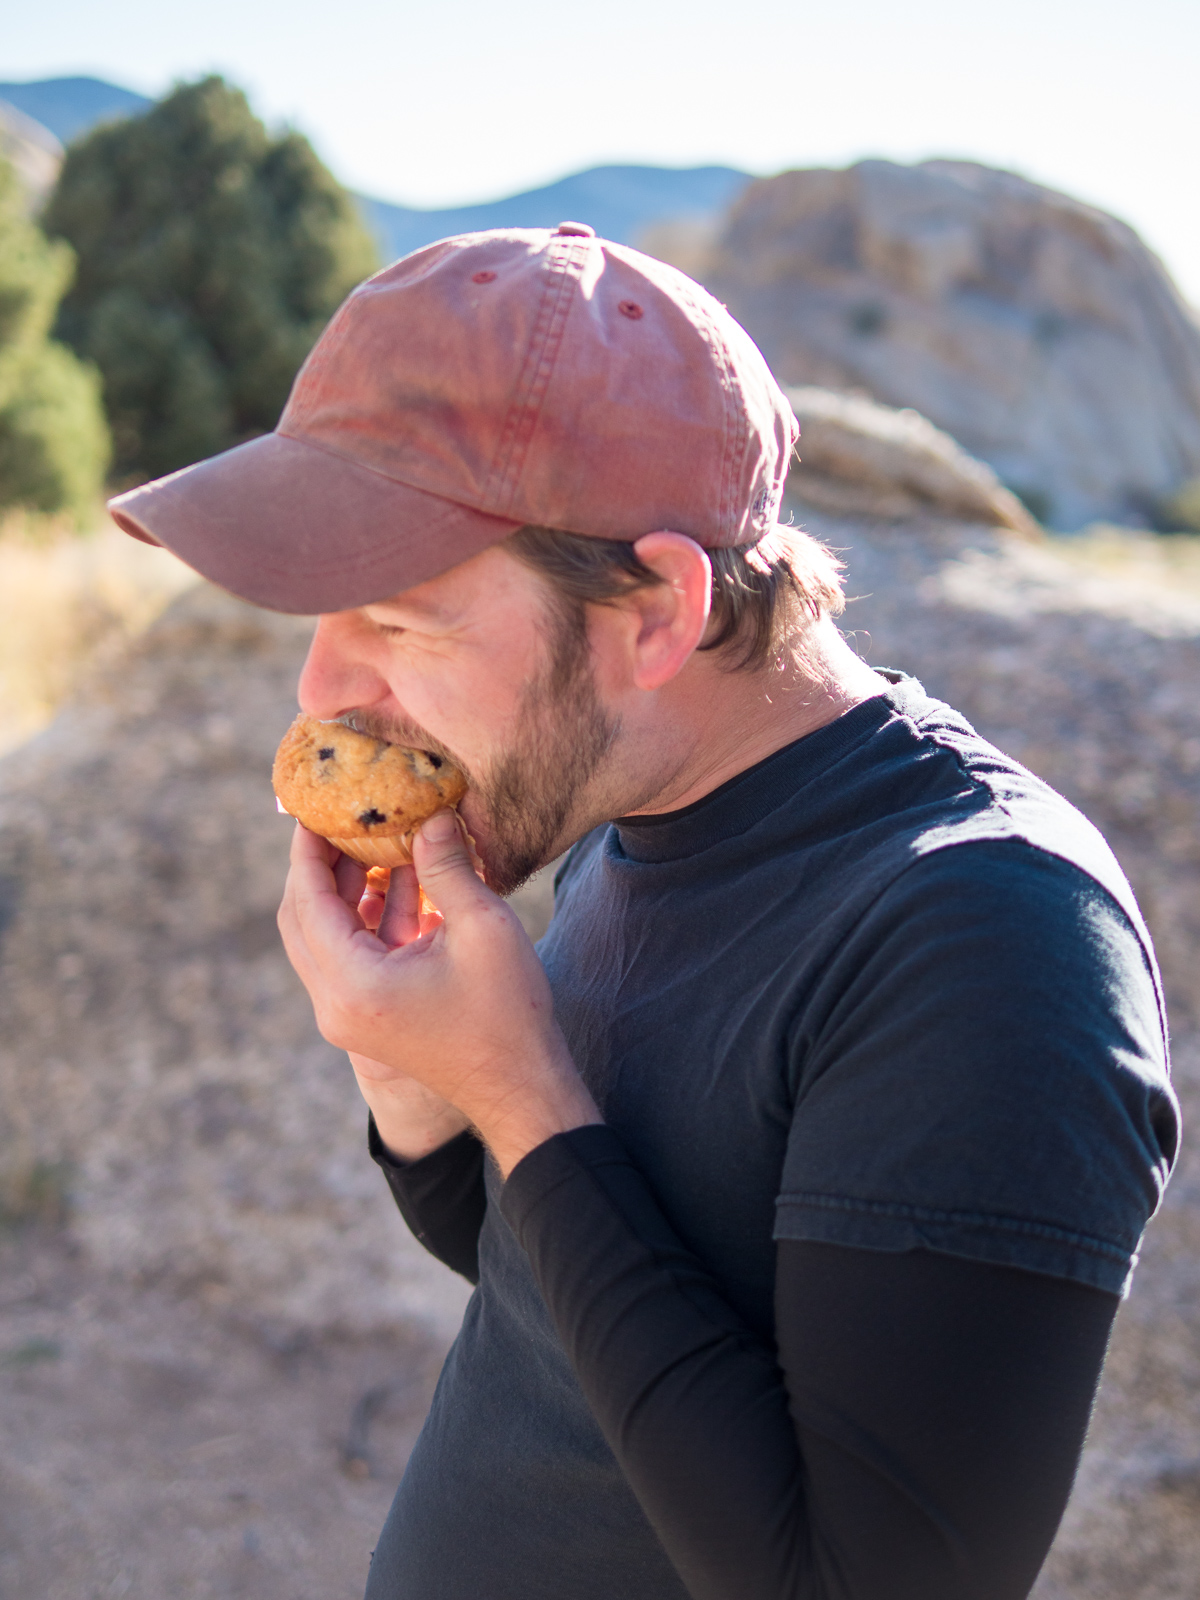 David eats a muffin